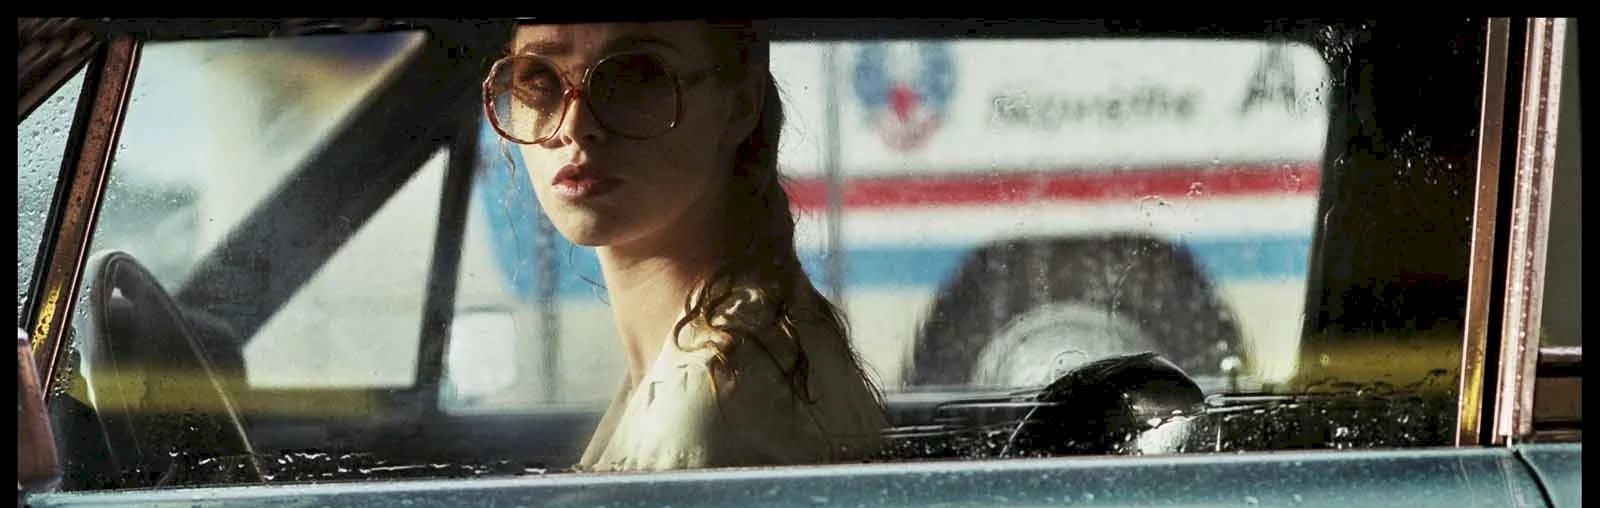 Photo 2 du film : La Dame dans l'auto avec des lunettes et un fusil